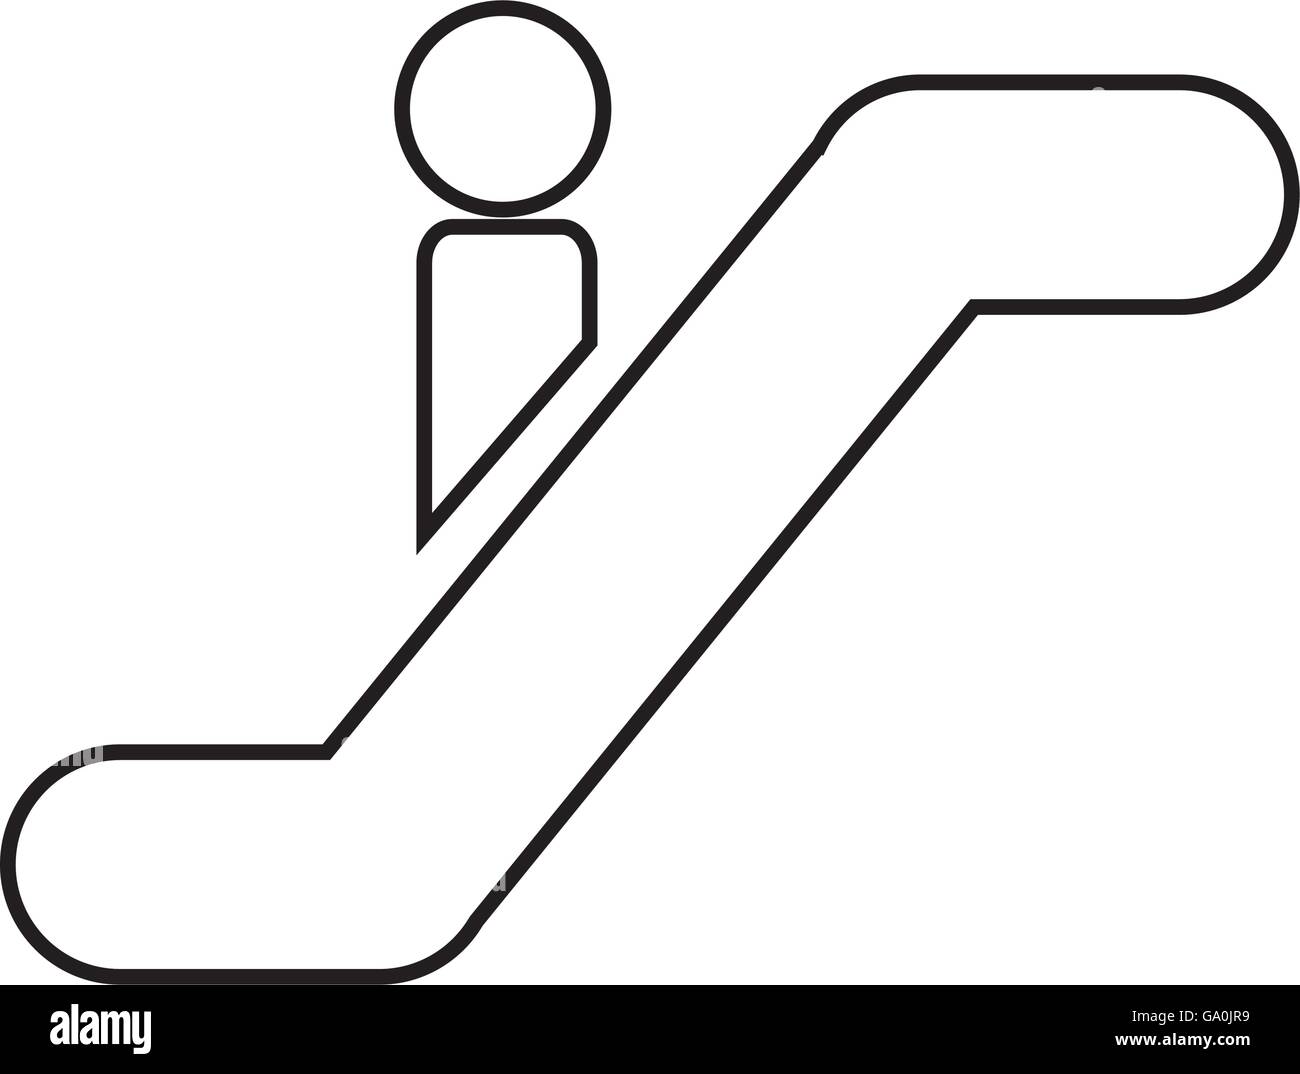 silhouette of person escalators isolated icon design Stock Vector